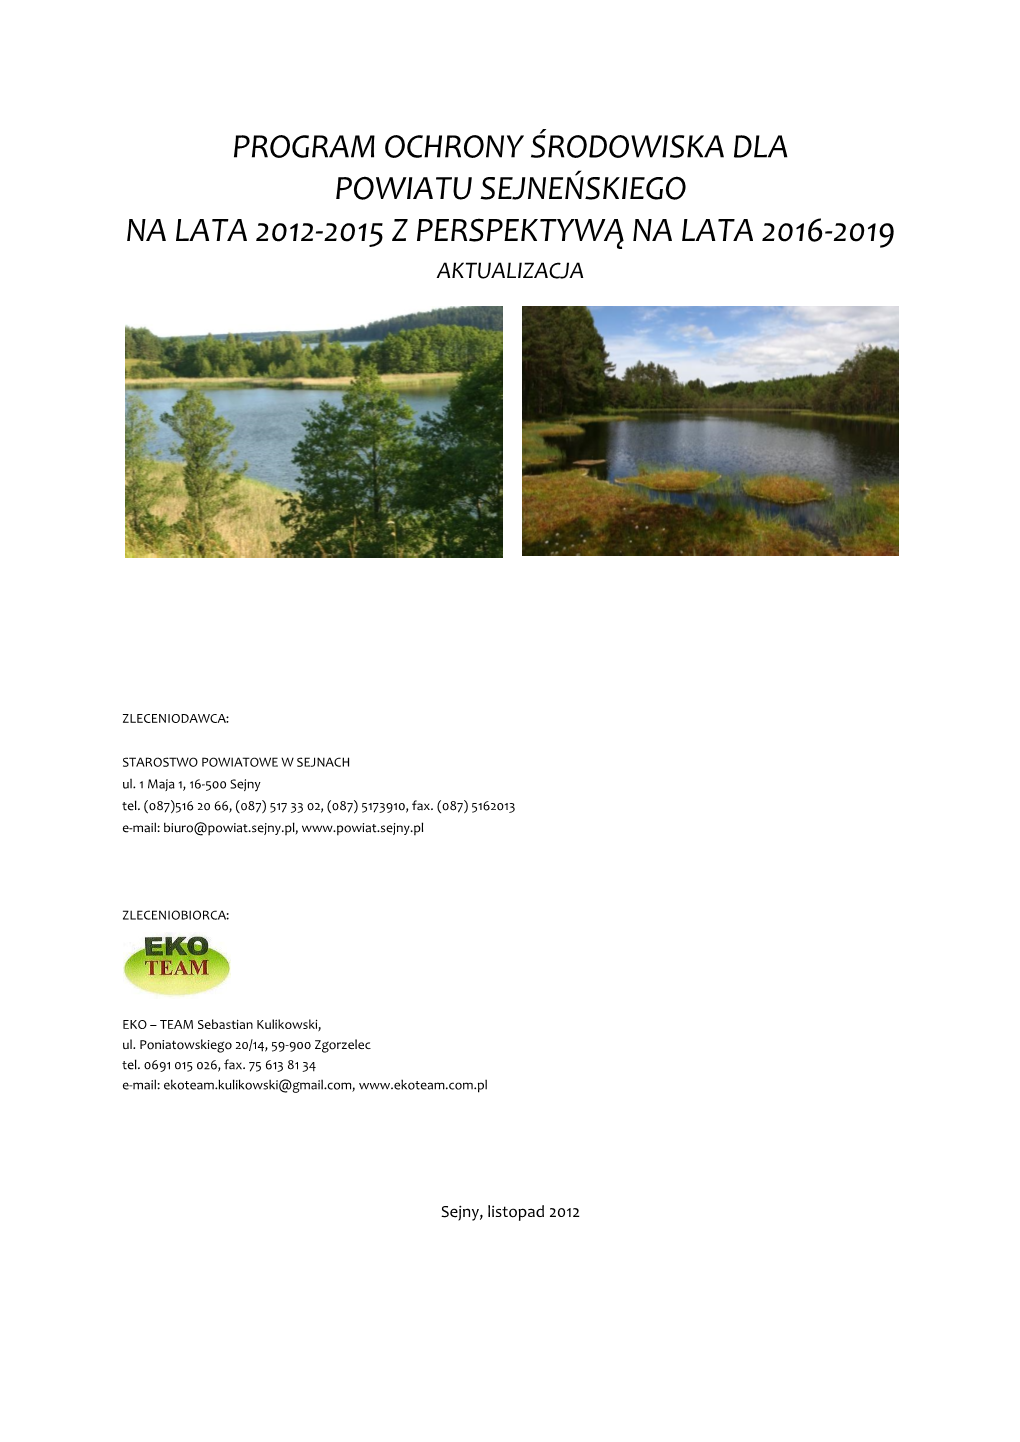 Program Ochrony Środowiska Dla Powiatu Sejneńskiego Na Lata 2012-2015 Z Perspektywą Na Lata 2016-2019 Aktualizacja